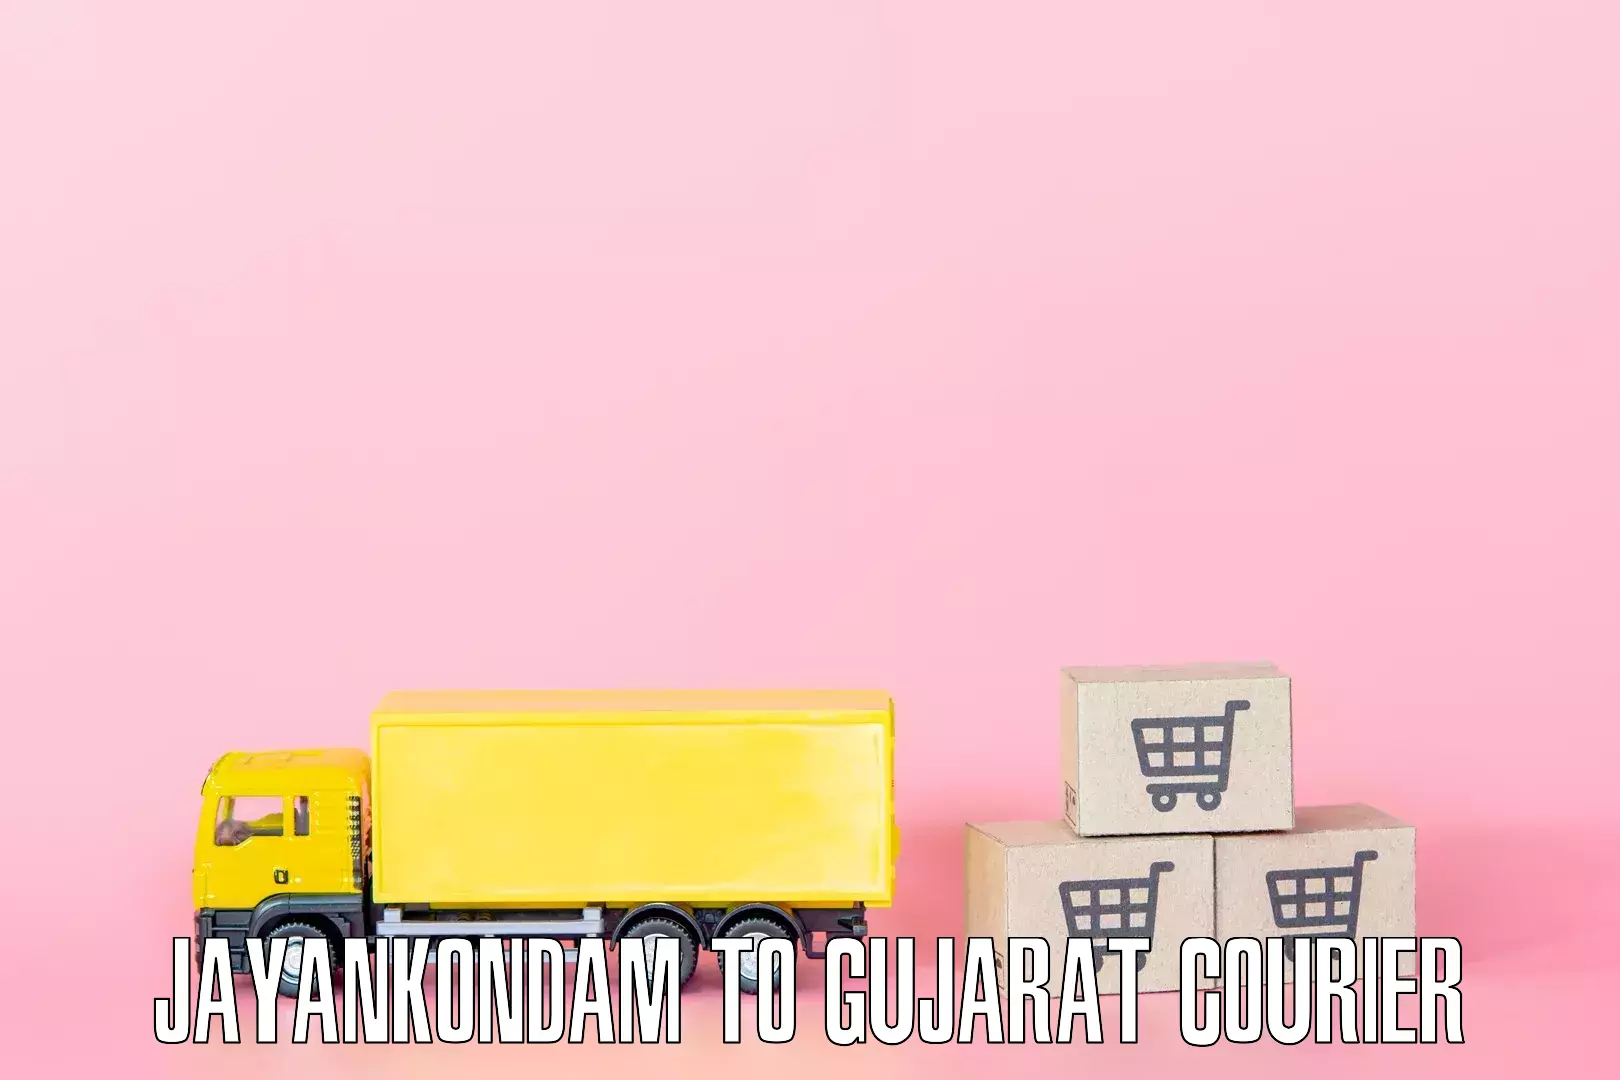 Budget-friendly movers Jayankondam to Gondal